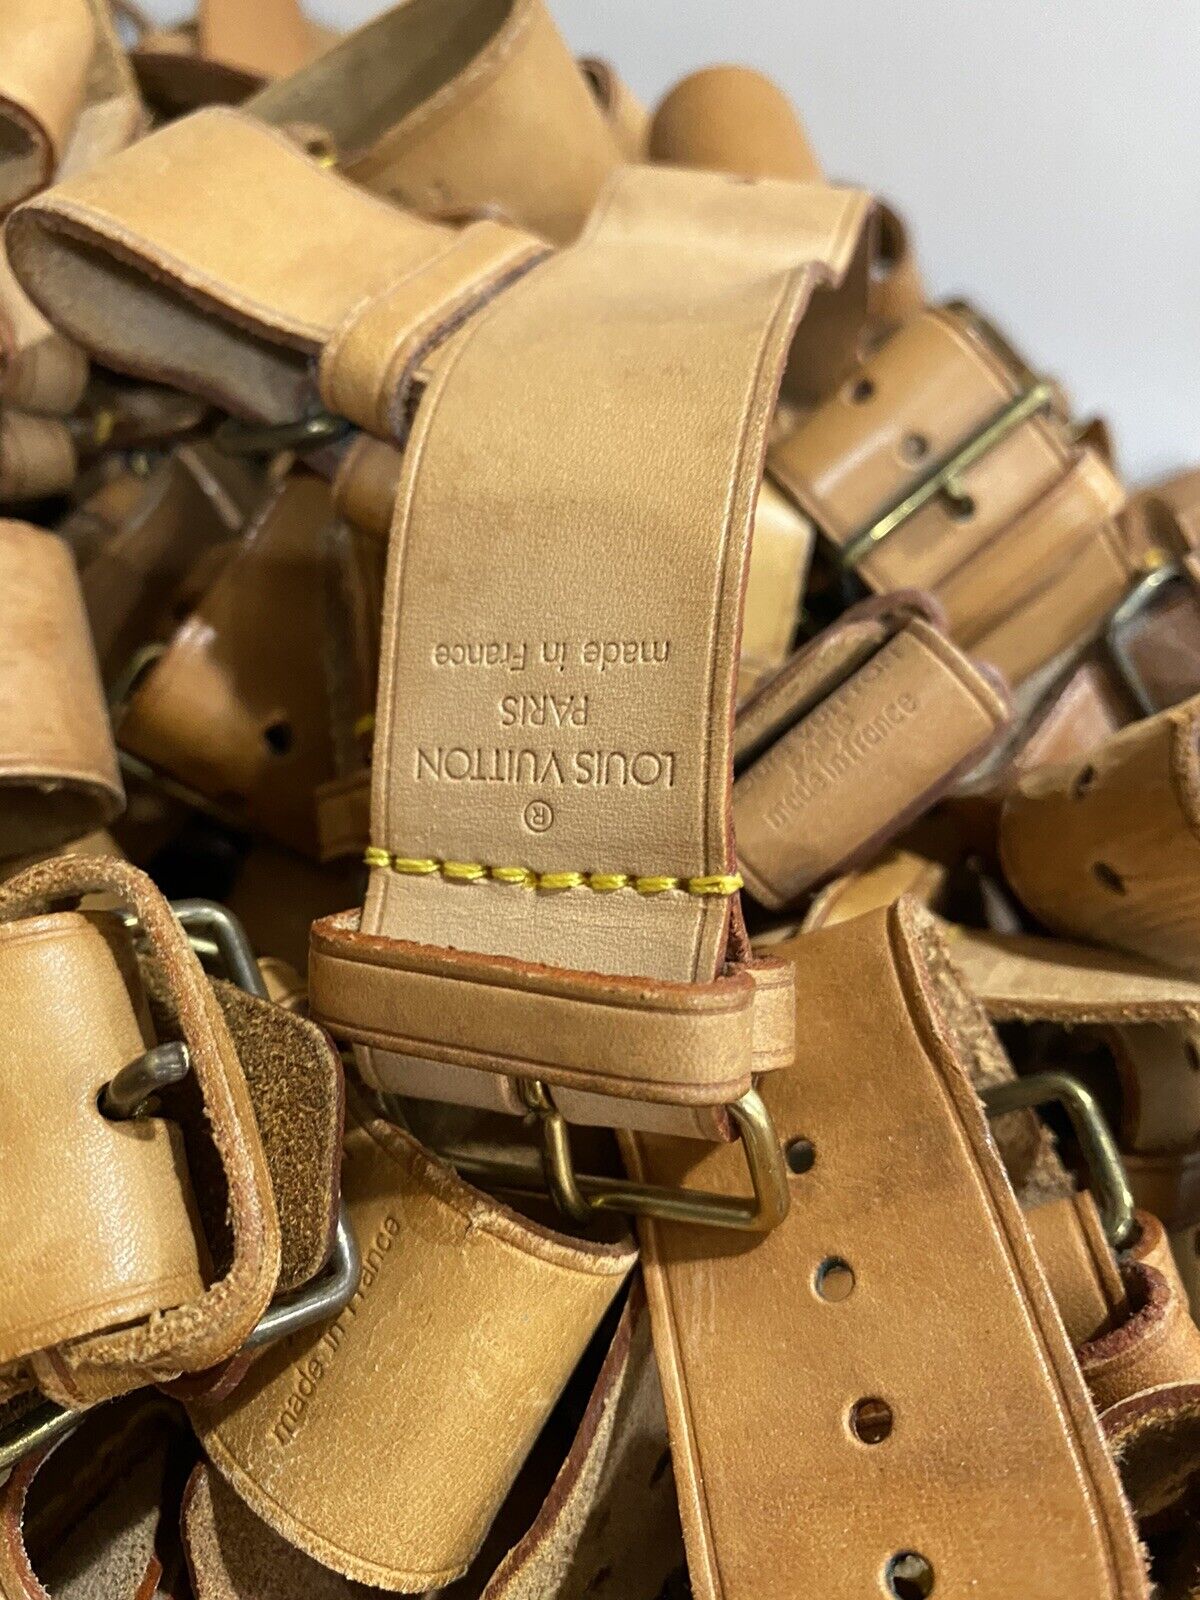 Louis Vuitton, Accessories, Authentic Louis Vuitton Poignet Belt Strap